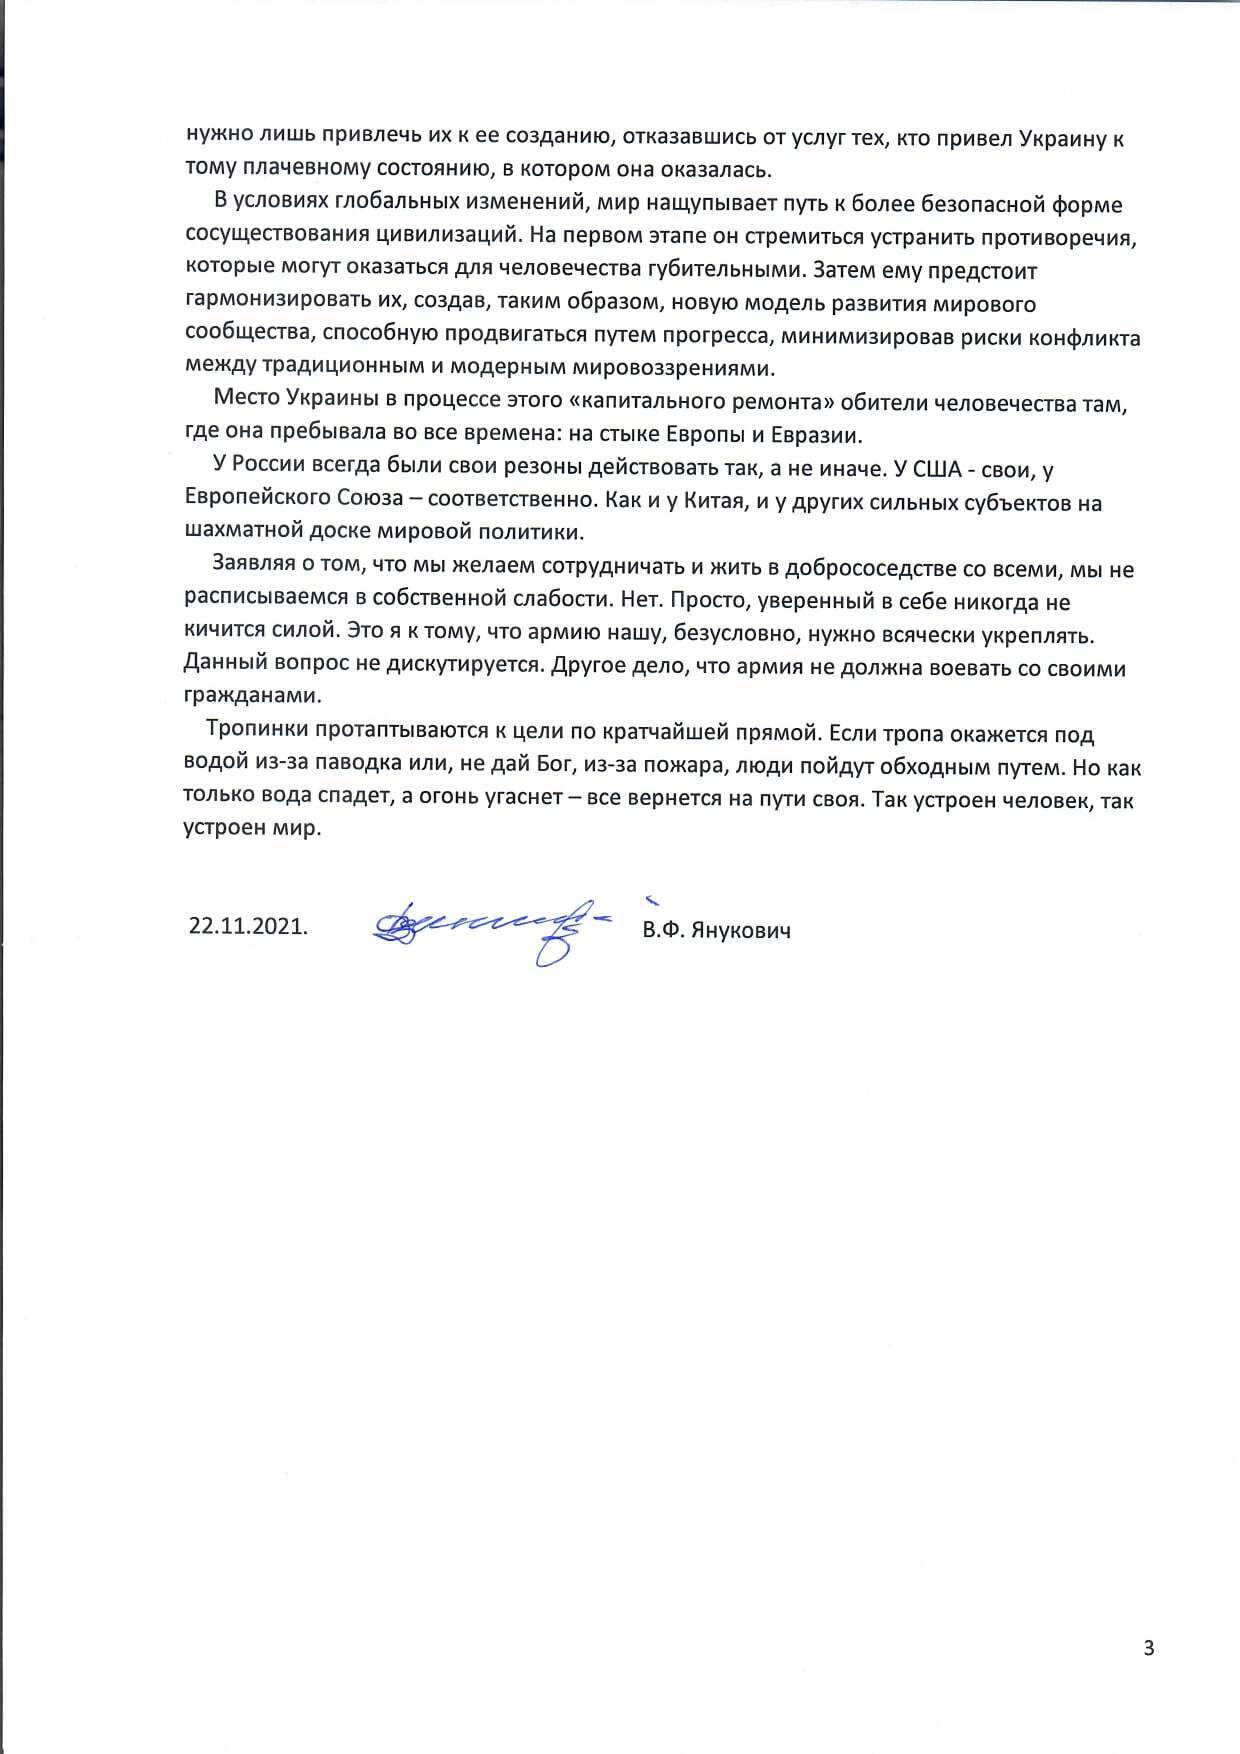 Янукович порассуждал о войне на Донбассе и действиях власти